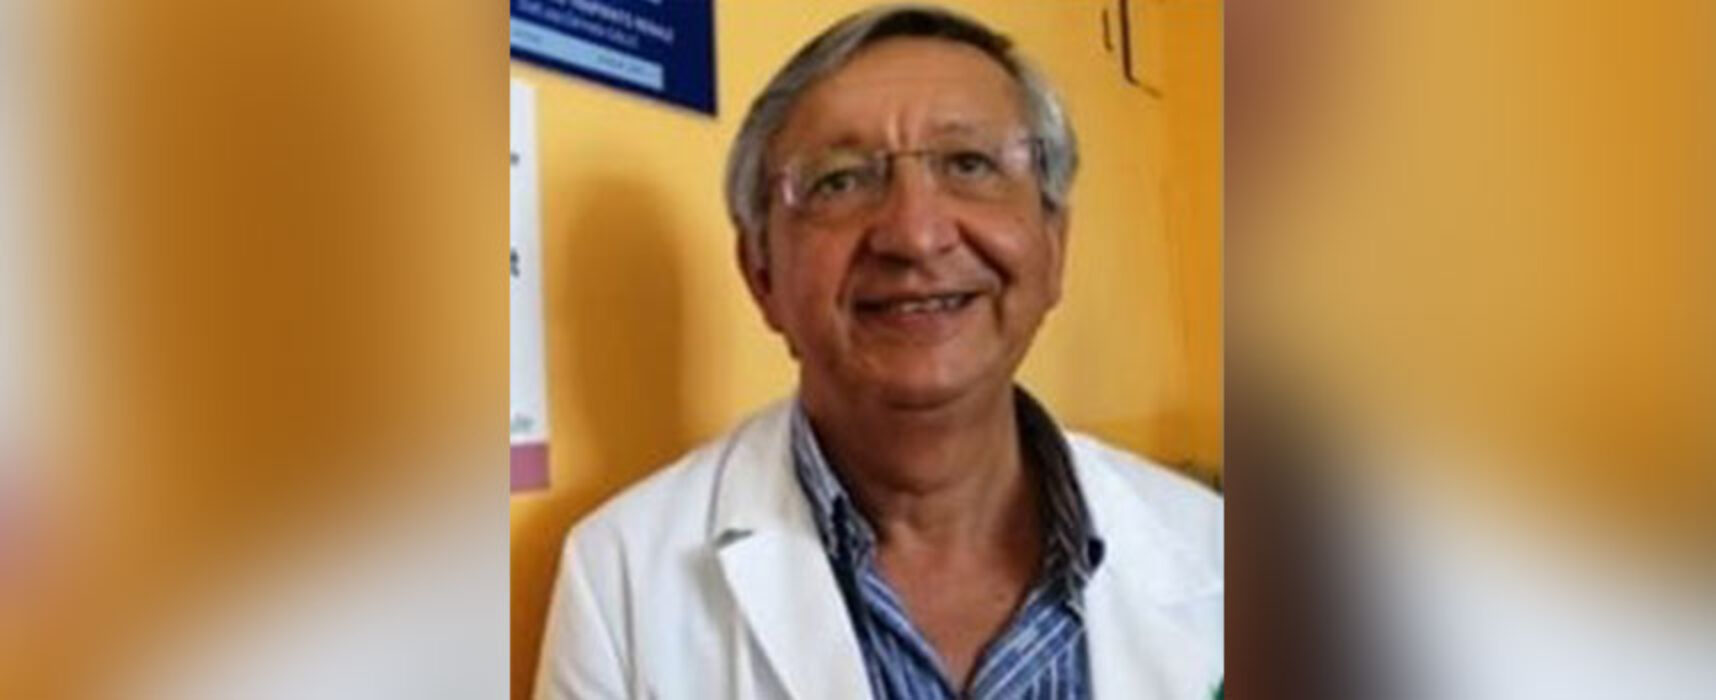 Circolo Unione ospita il Dottor Vitobello sul tema “La Speranza di vita”